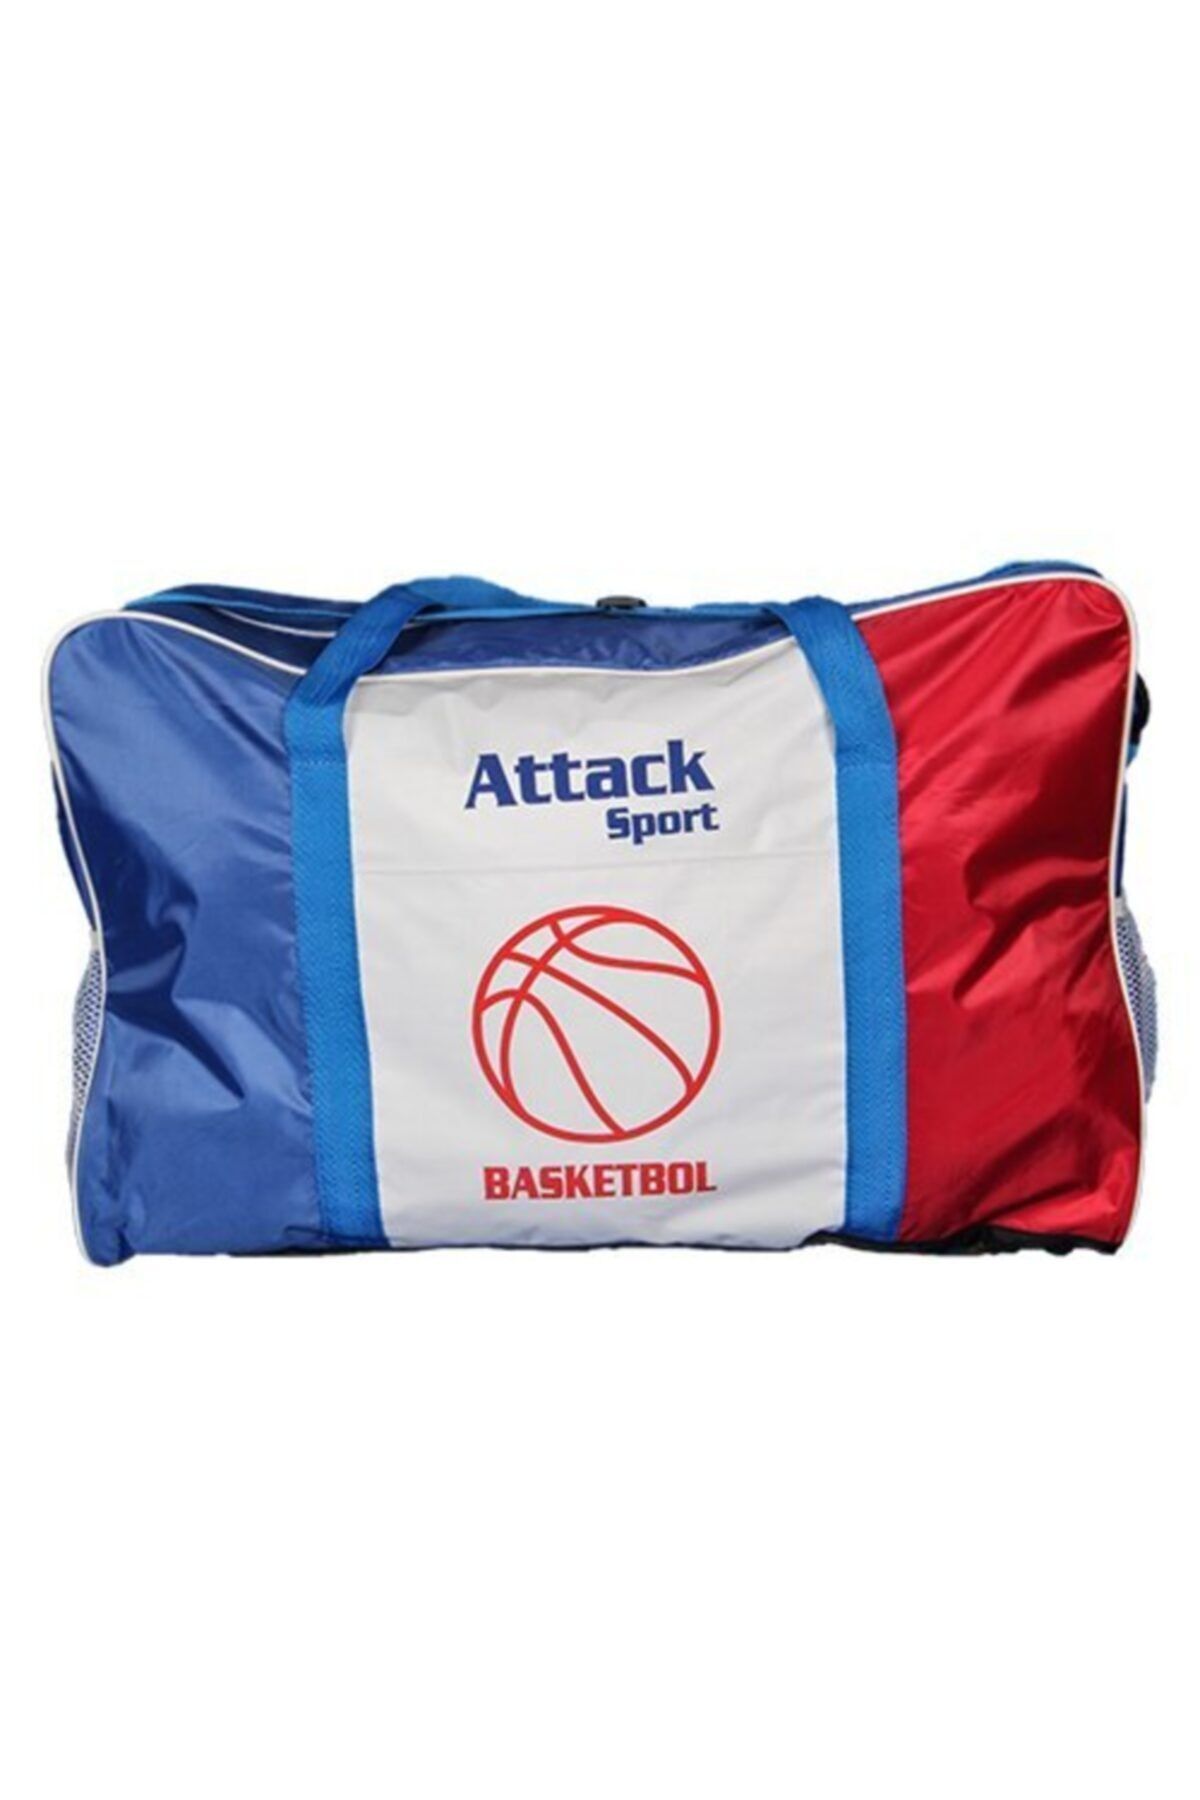 Attack Sport Basketbol Top Çantası, Top Taşıma Çantası